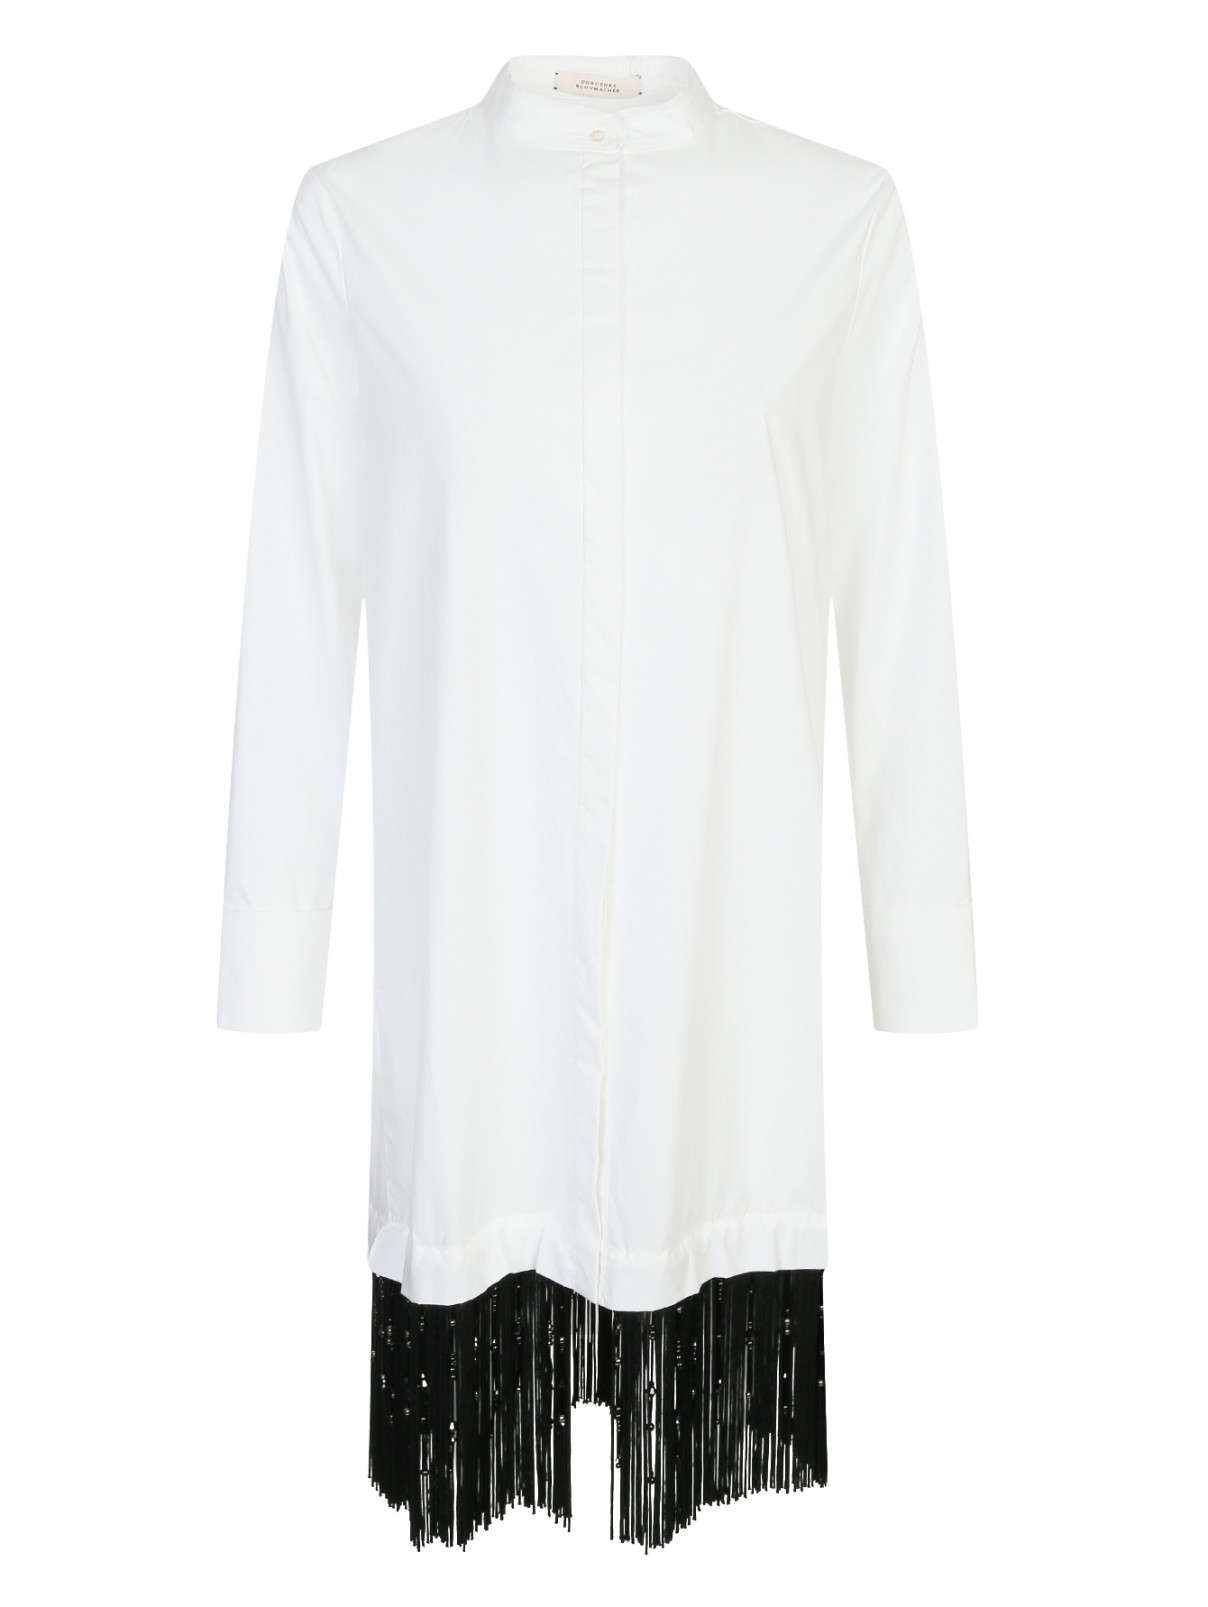 Удлиненная рубашка из хлопка с бахромой Dorothee Schumacher  –  Общий вид  – Цвет:  Белый